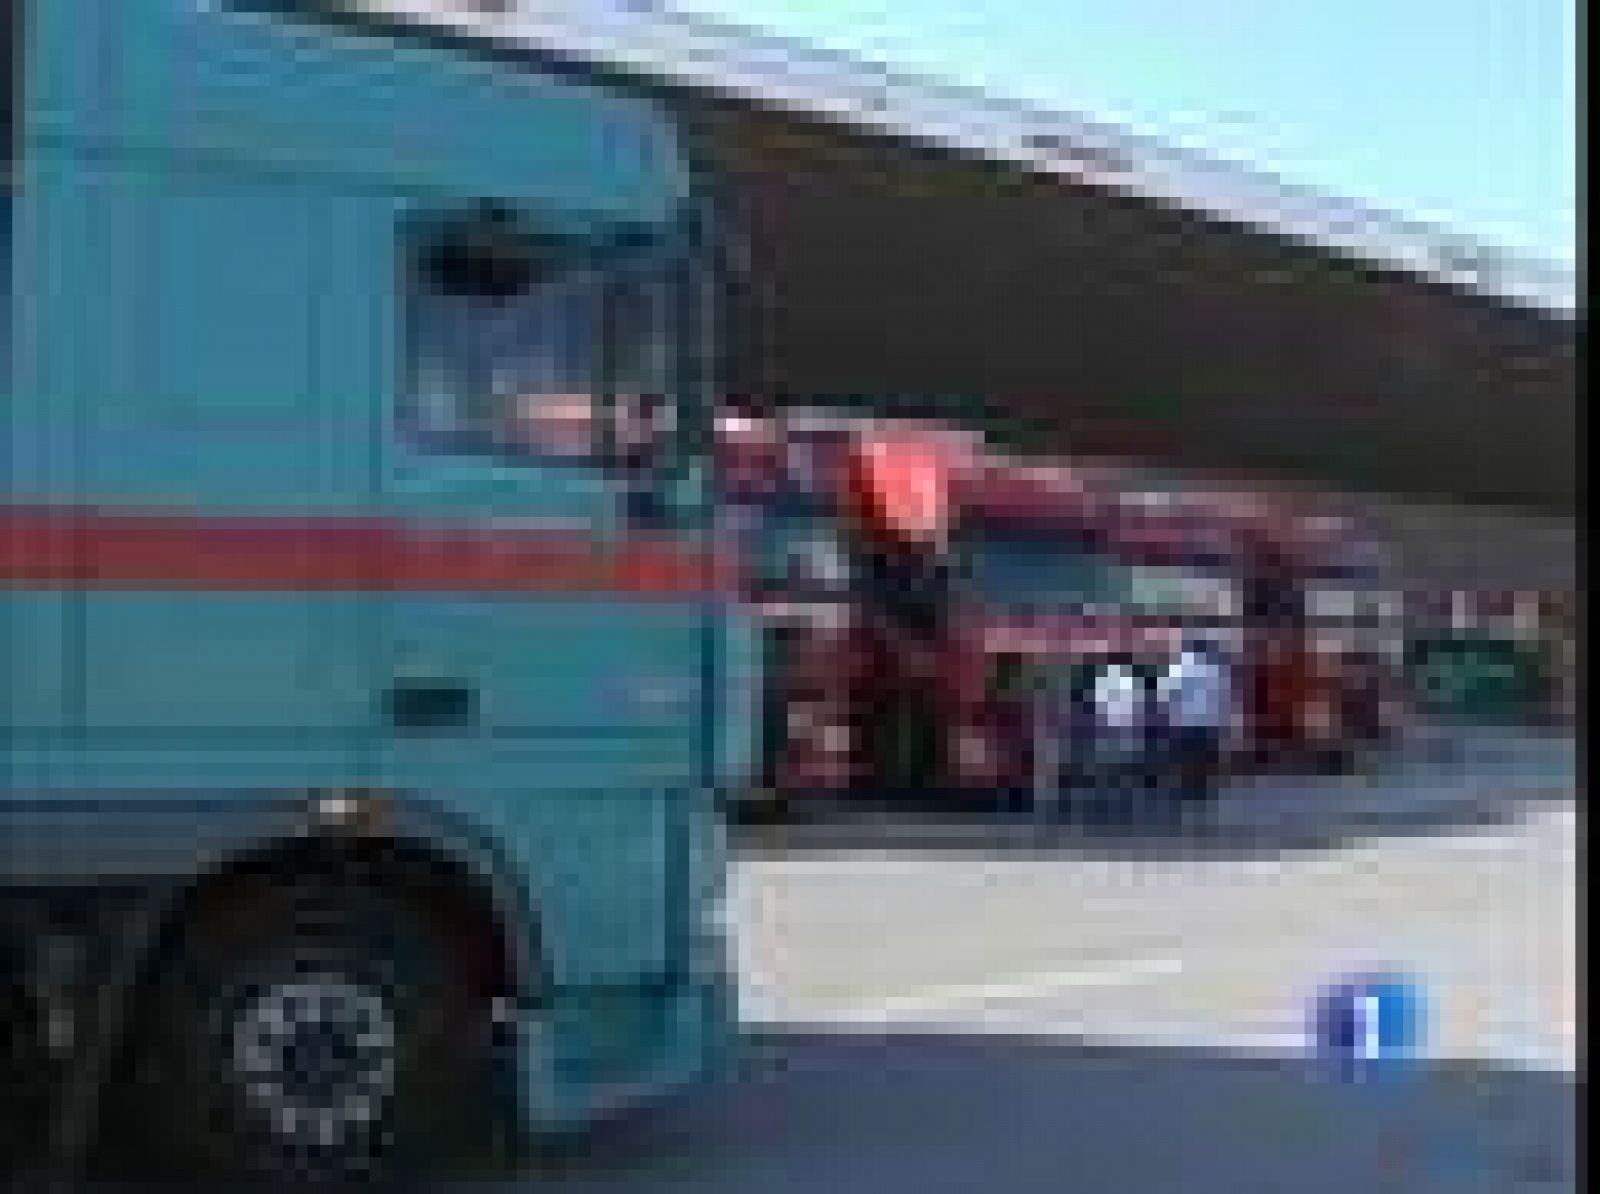 A la terminal de mercancías de El Prat llegan trailers de toda Europa para transportar por carretera lo que no pueden cargar los aviones. Mercancía que lleva días bloqueada en el aeropuerto.